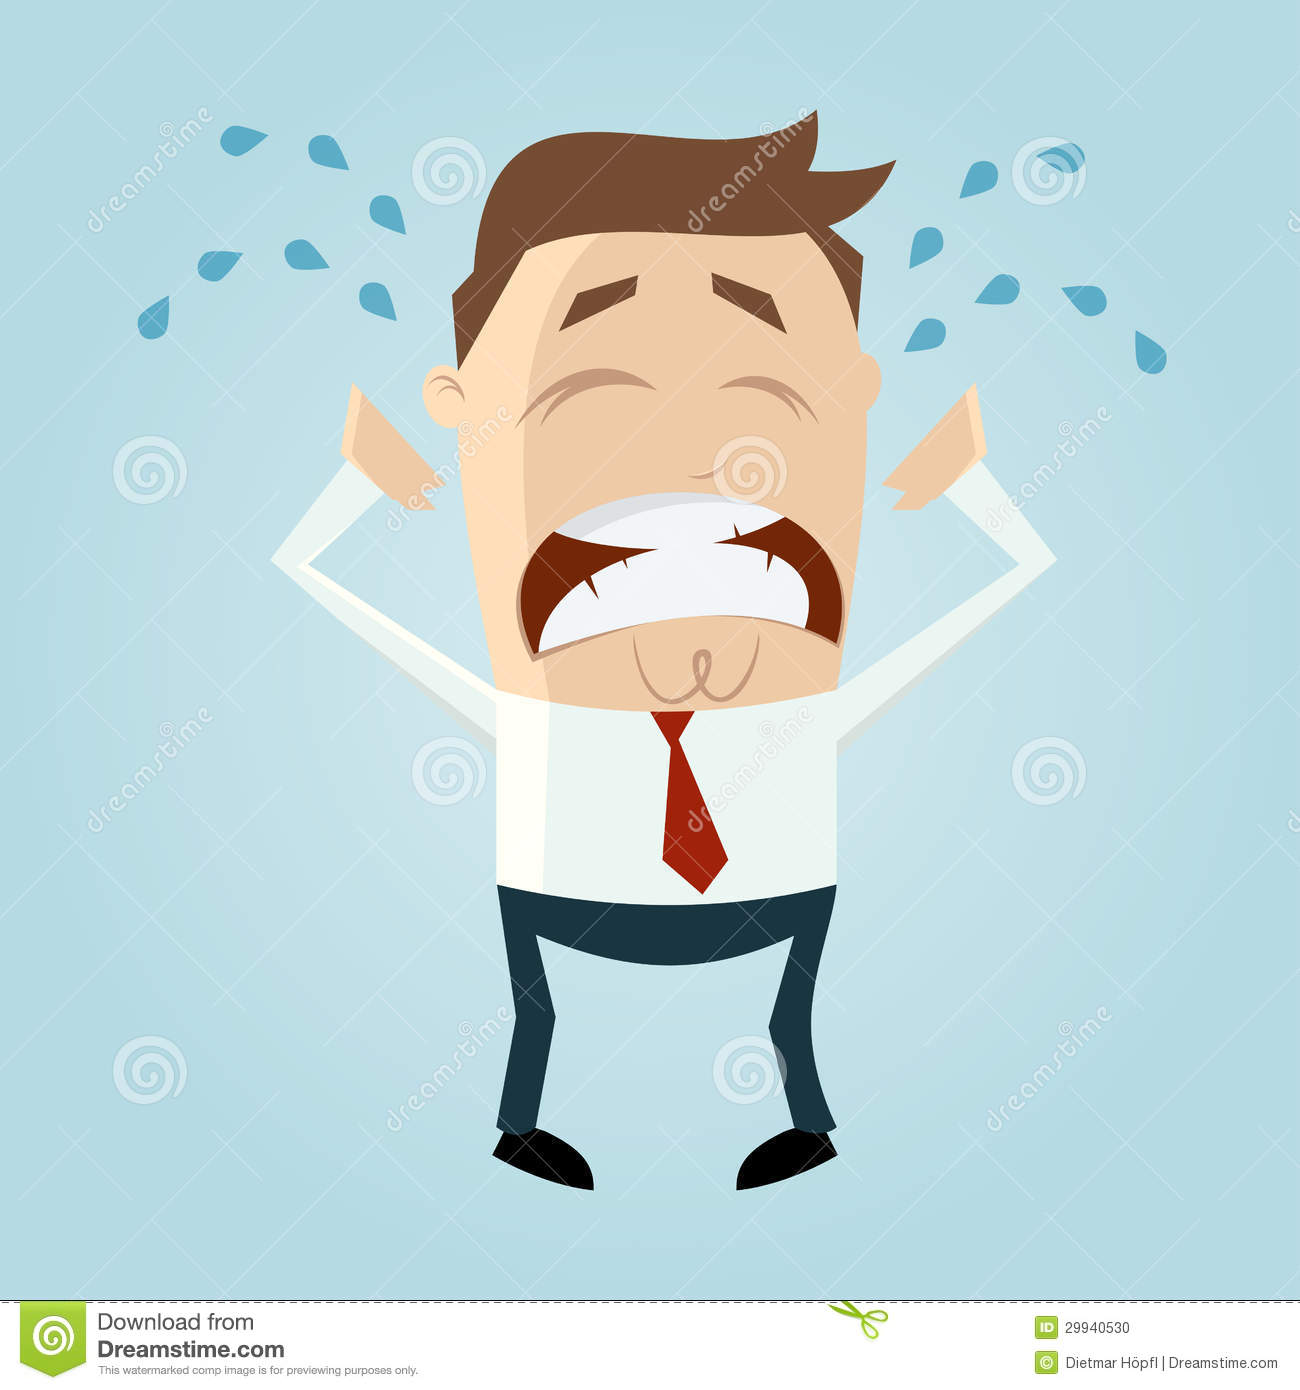 Frustration Animation Sad Crying Cartoon Man Stock Photo   Image    